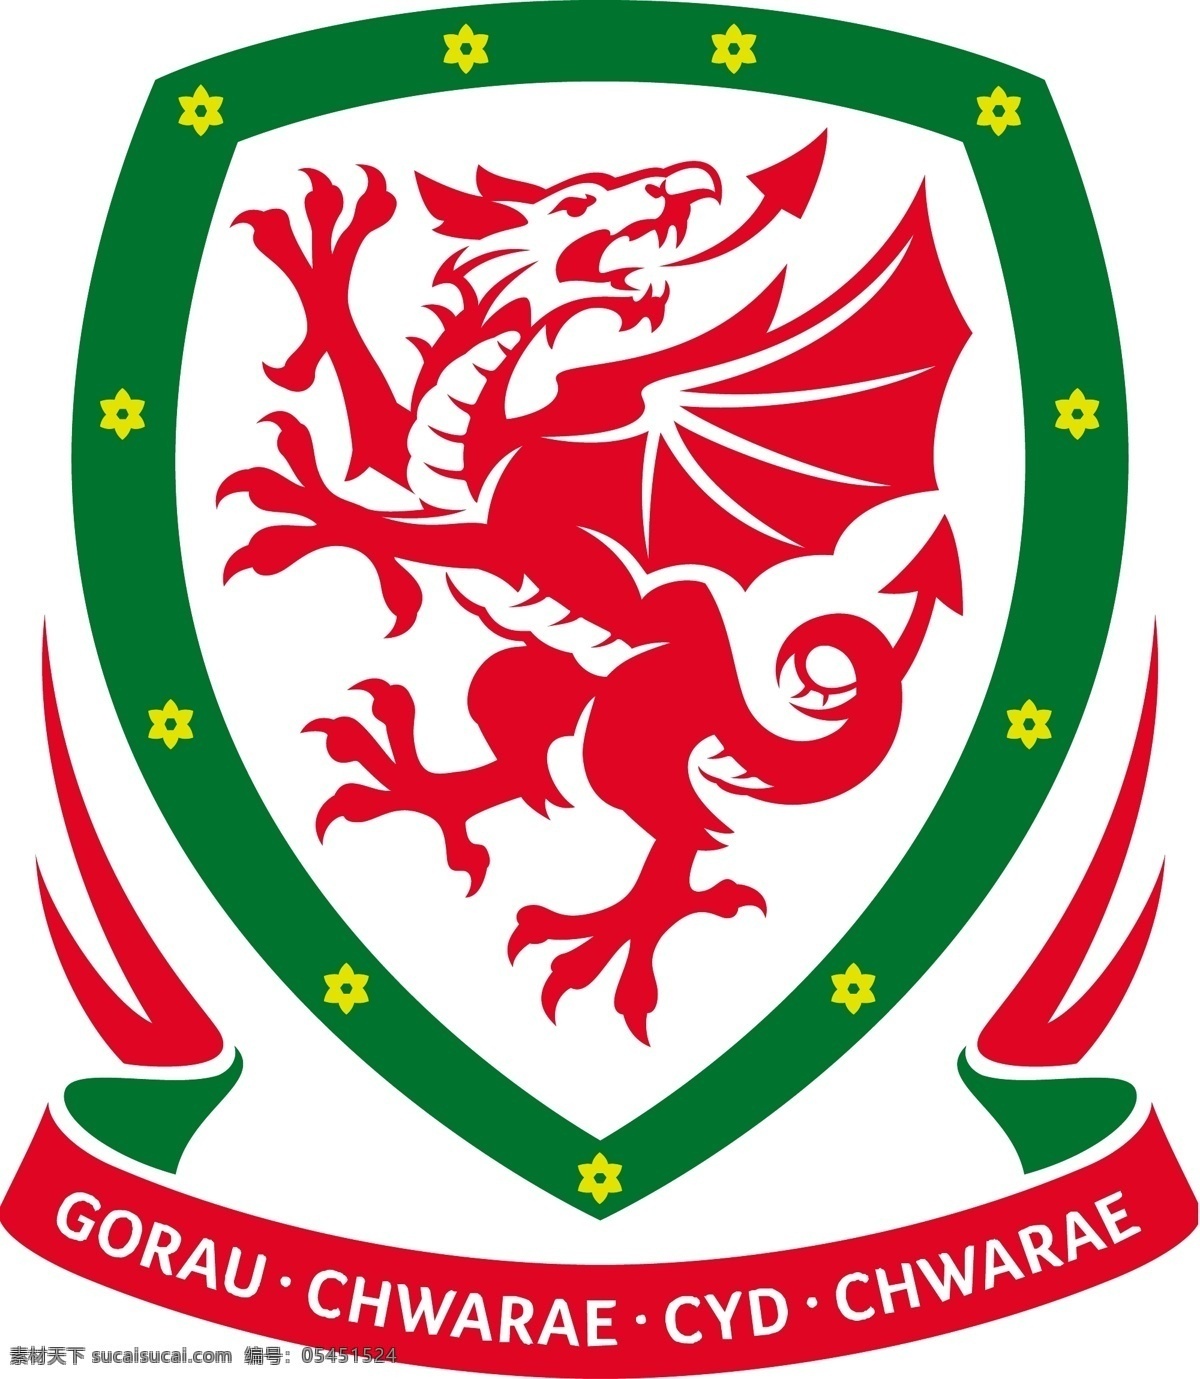 威尔士 足球 协会 标识 公司 免费 品牌 品牌标识 商标 矢量标志下载 免费矢量标识 矢量 psd源文件 logo设计